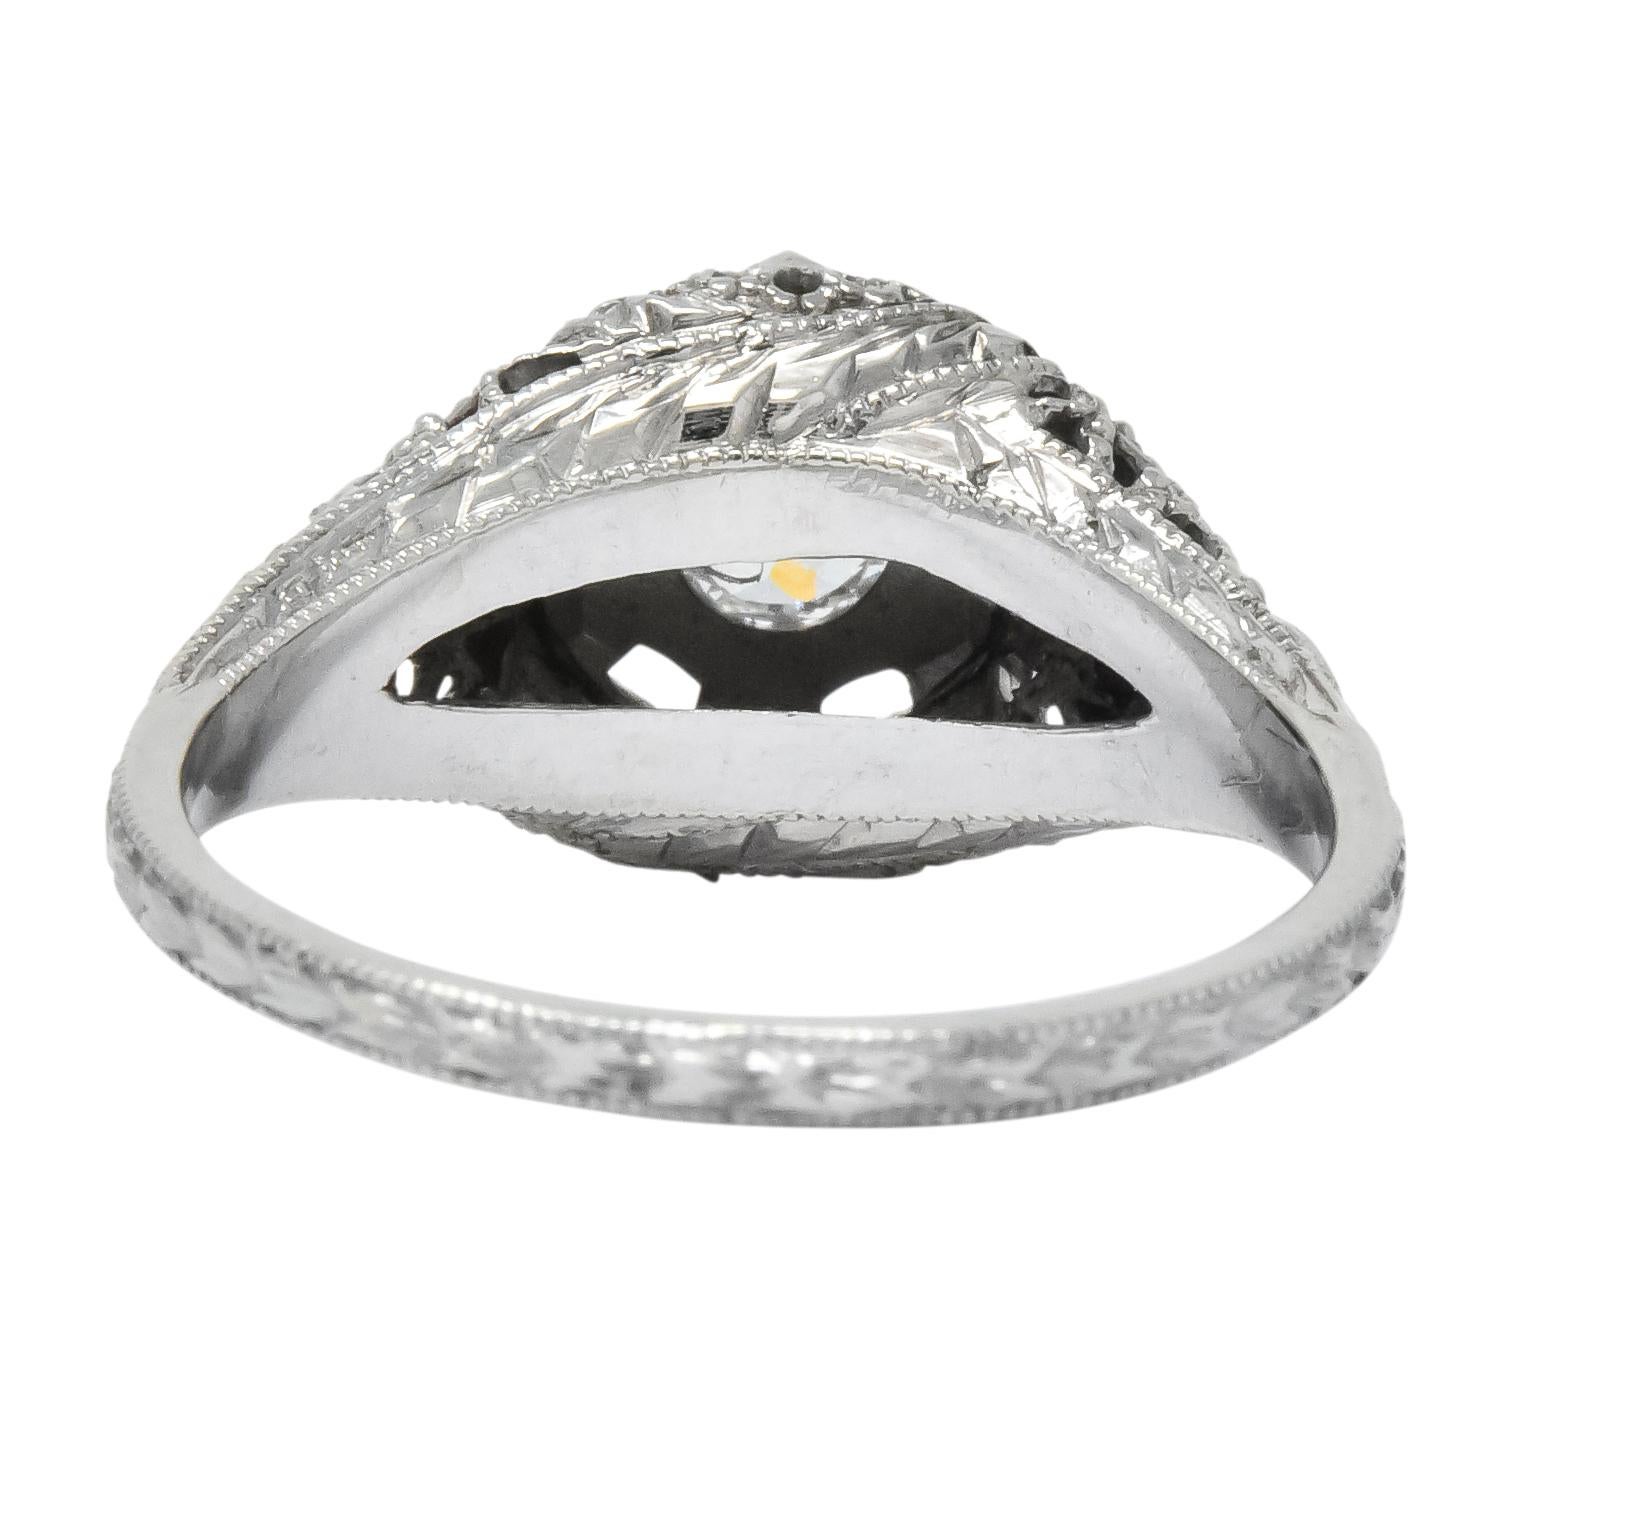 Women's or Men's Edwardian Old European Cut Diamond 18 Karat White Gold Engagement Ring